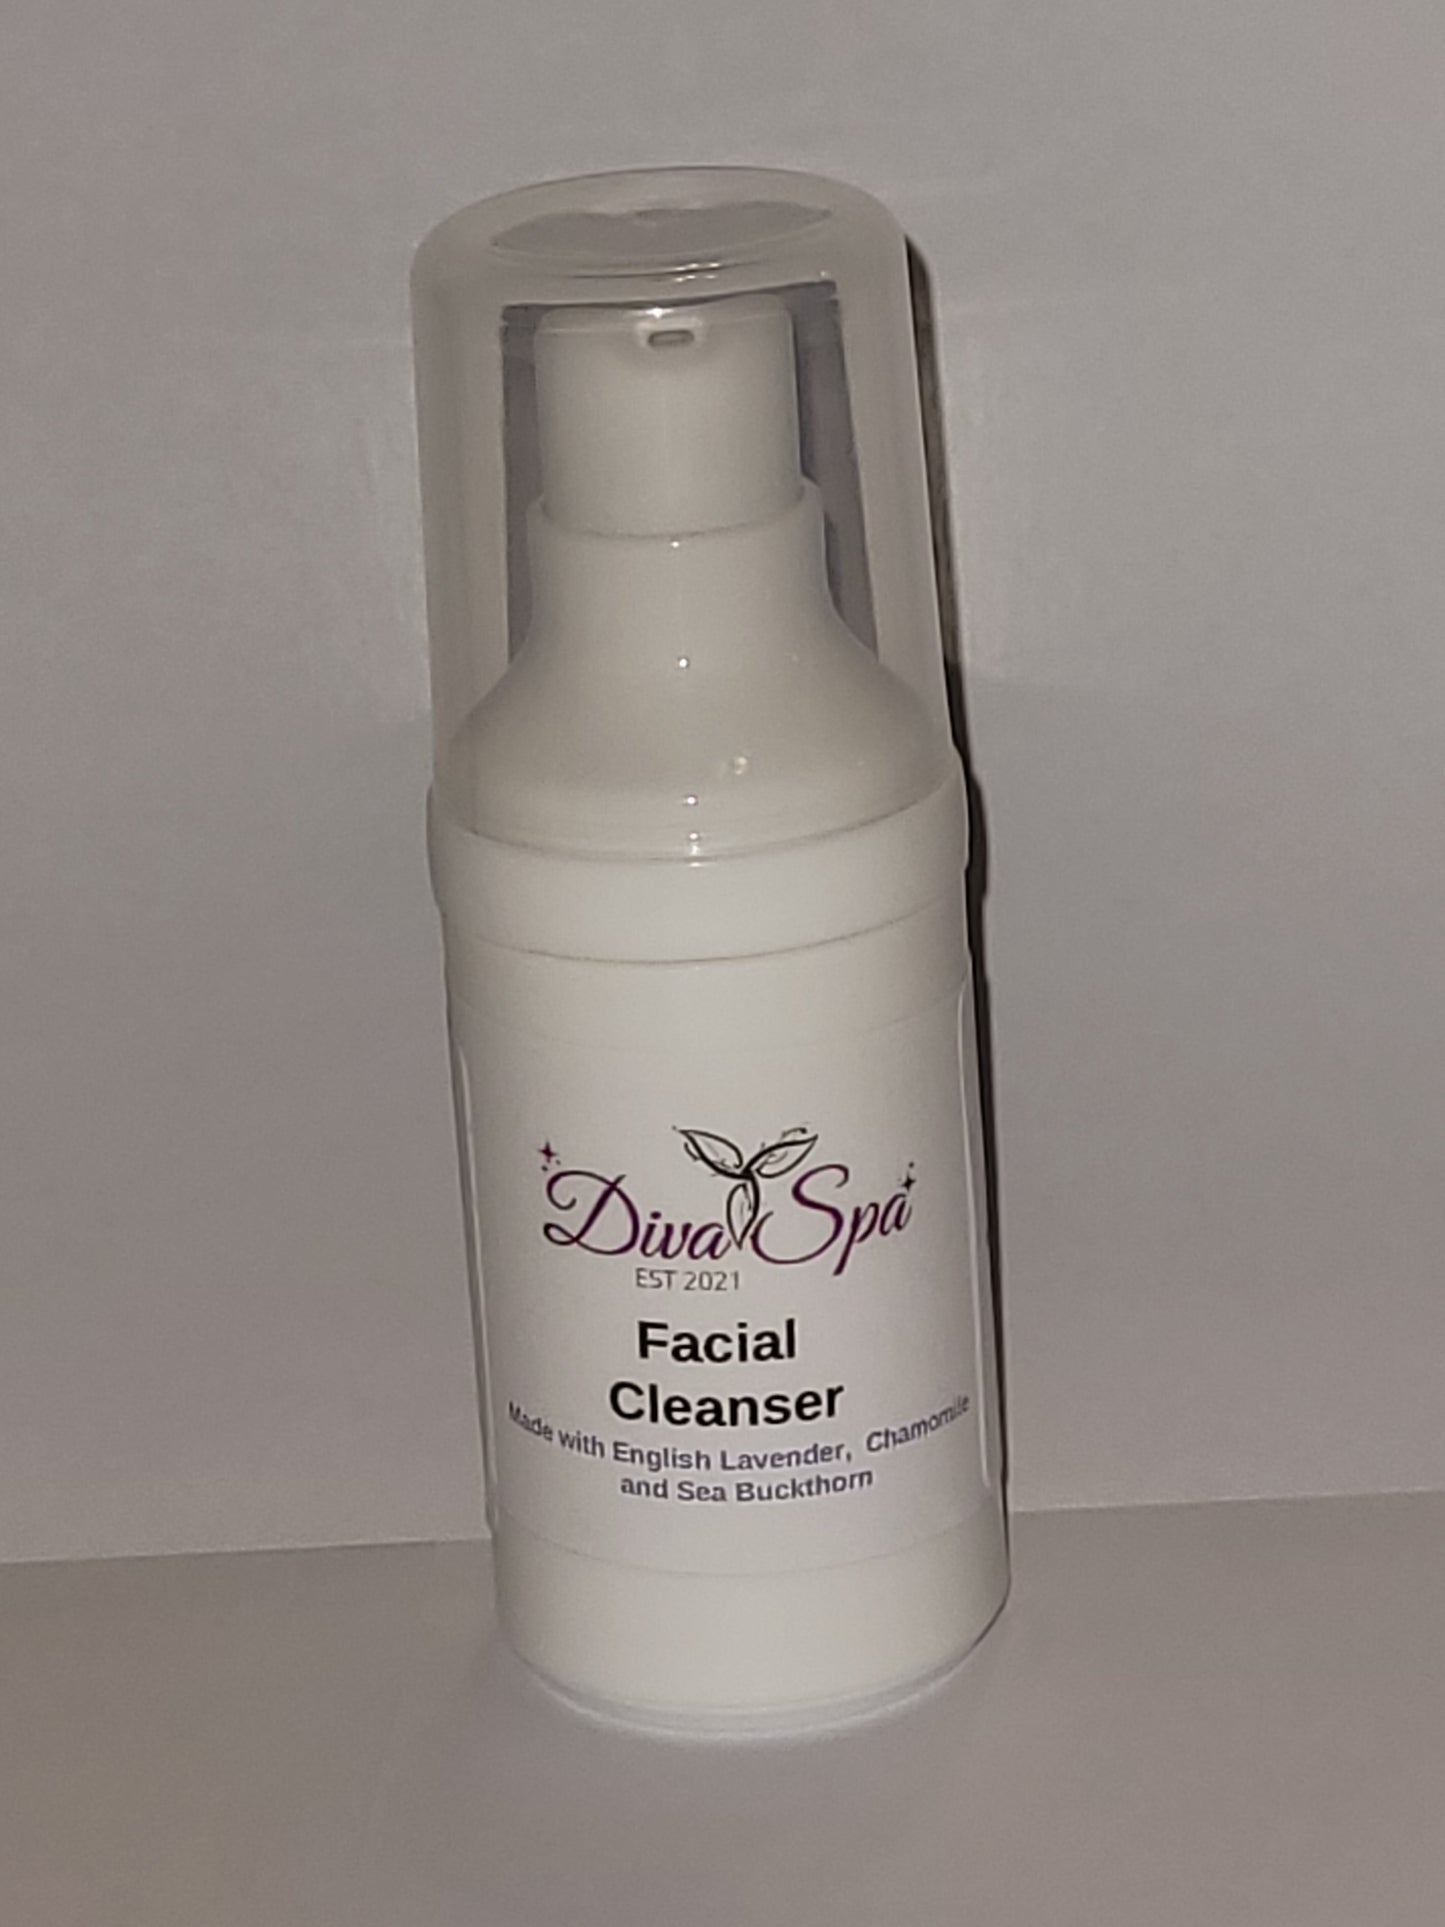 Facial cleanser 2 weeks trial